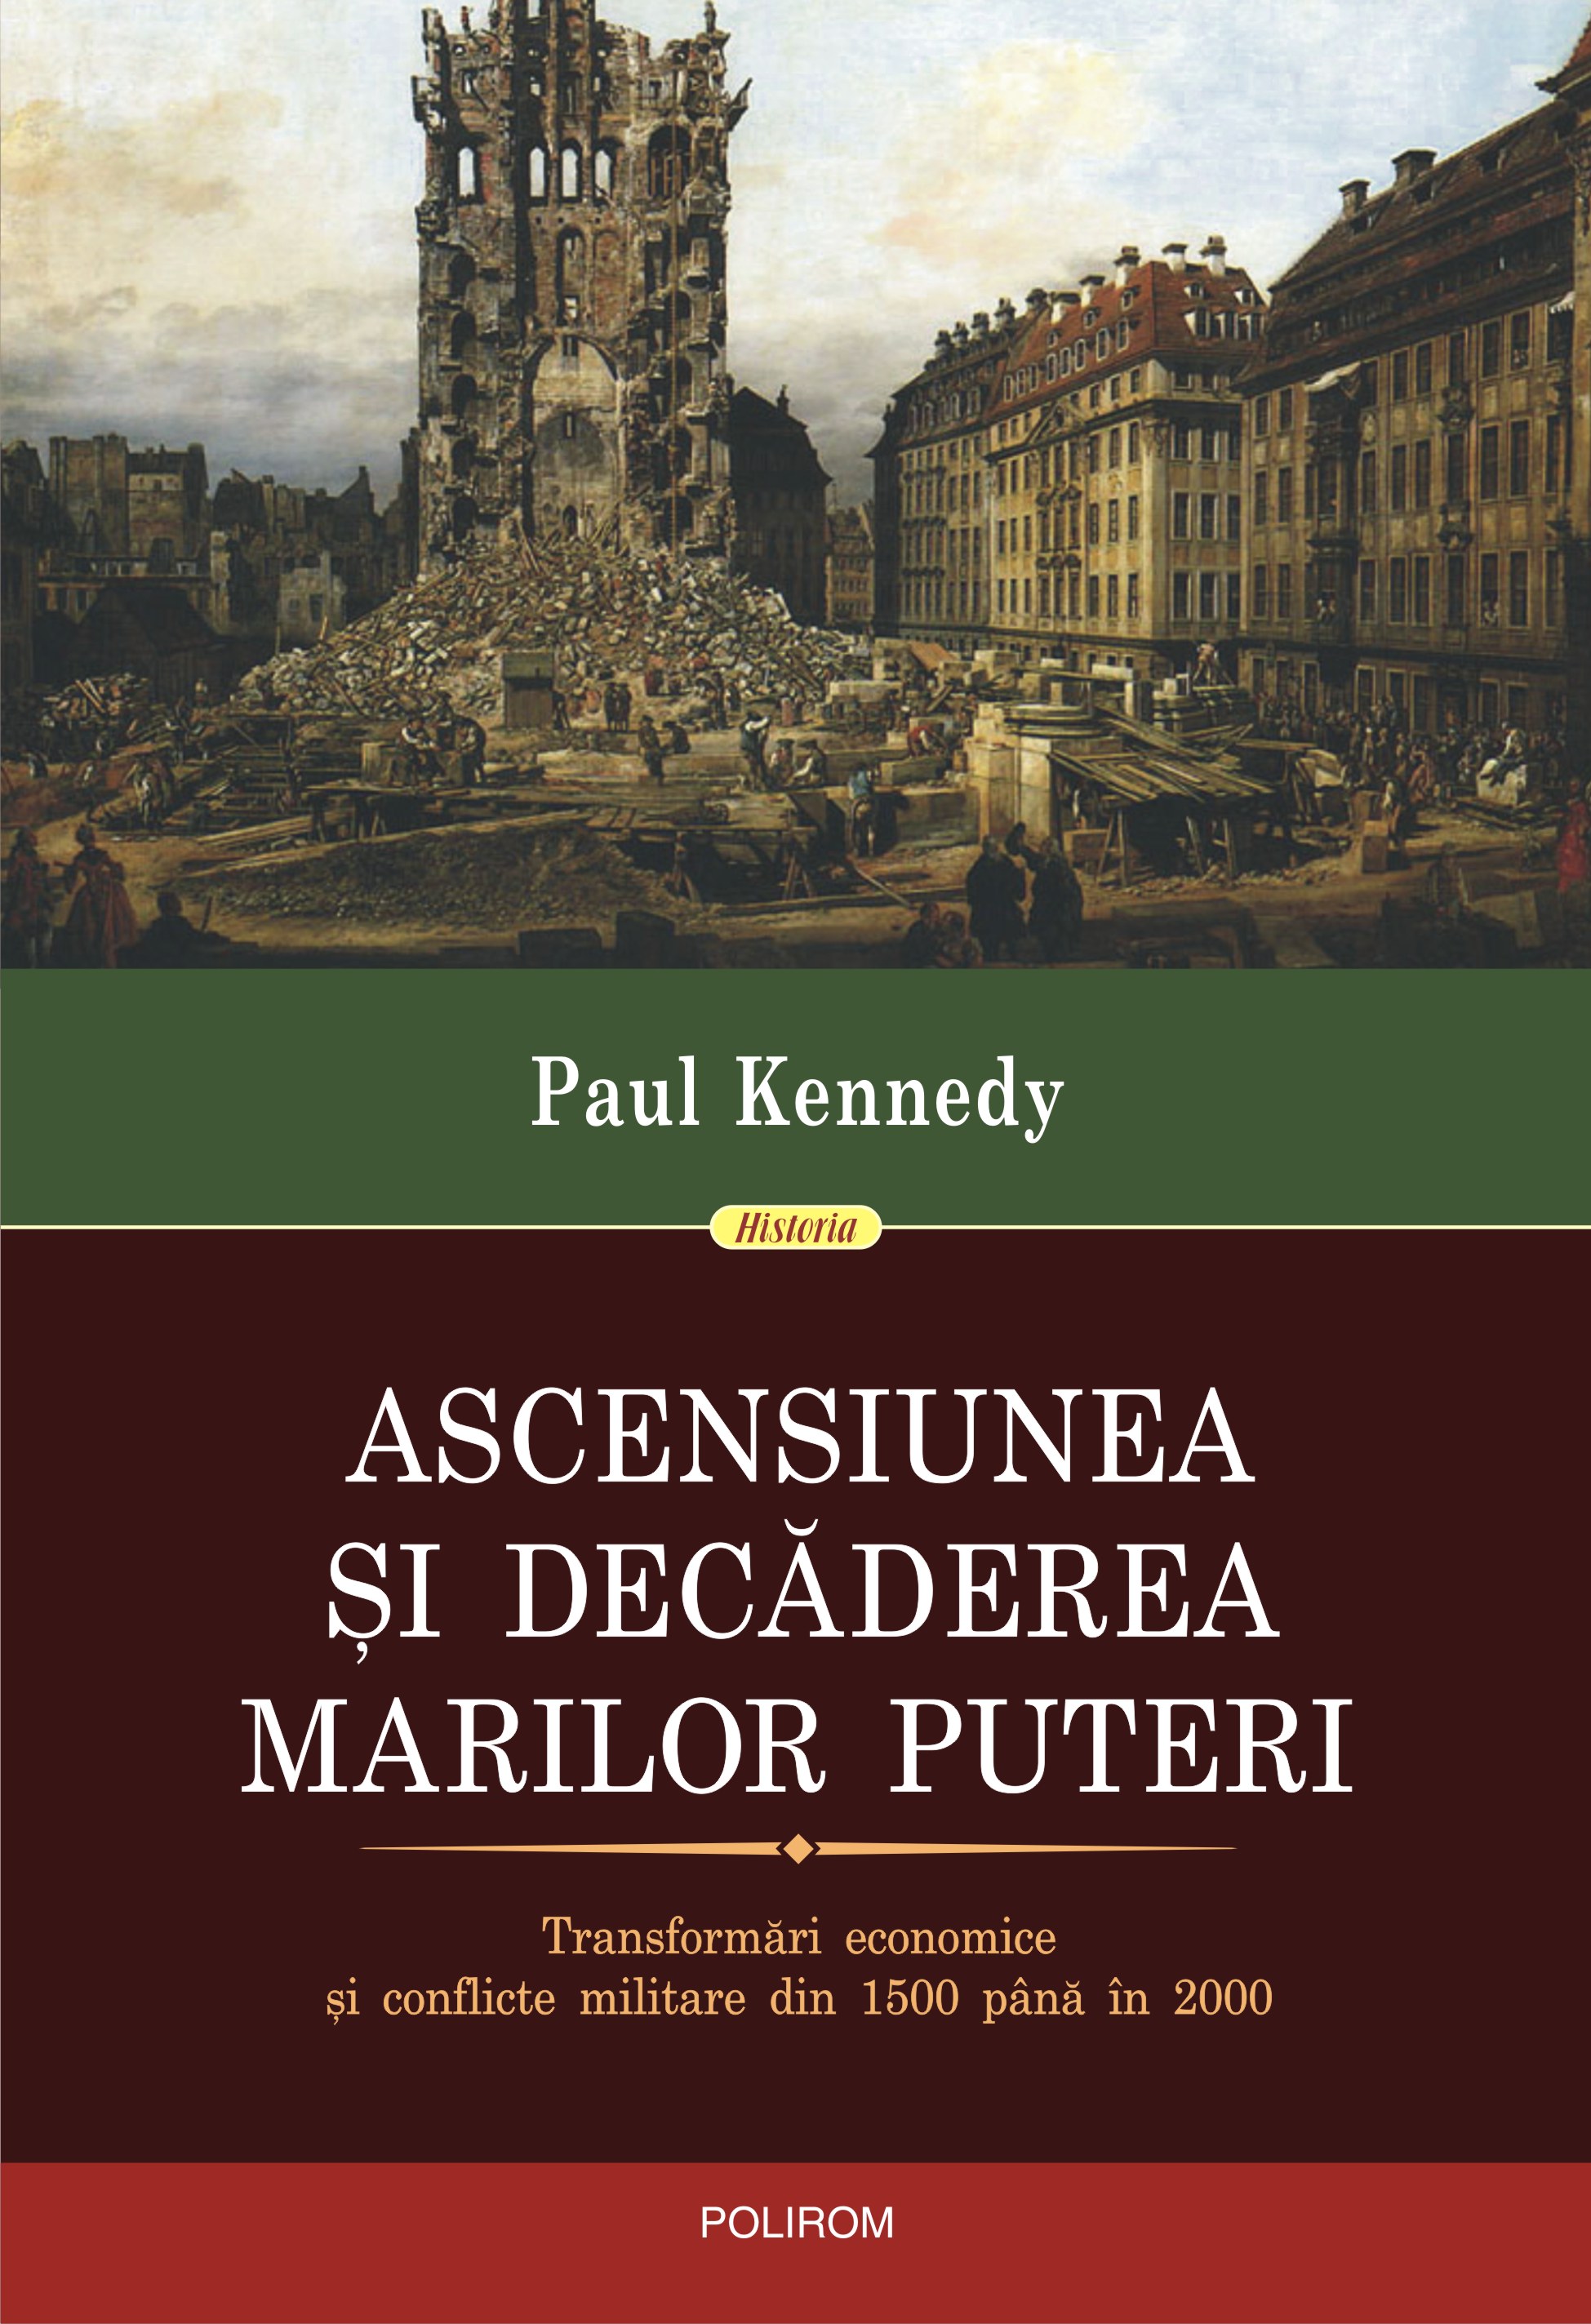 eBook Ascensiunea si decaderea marilor puteri: transformari economice si conflicte militare din 1500 pana in 2000 - Paul Kennedy